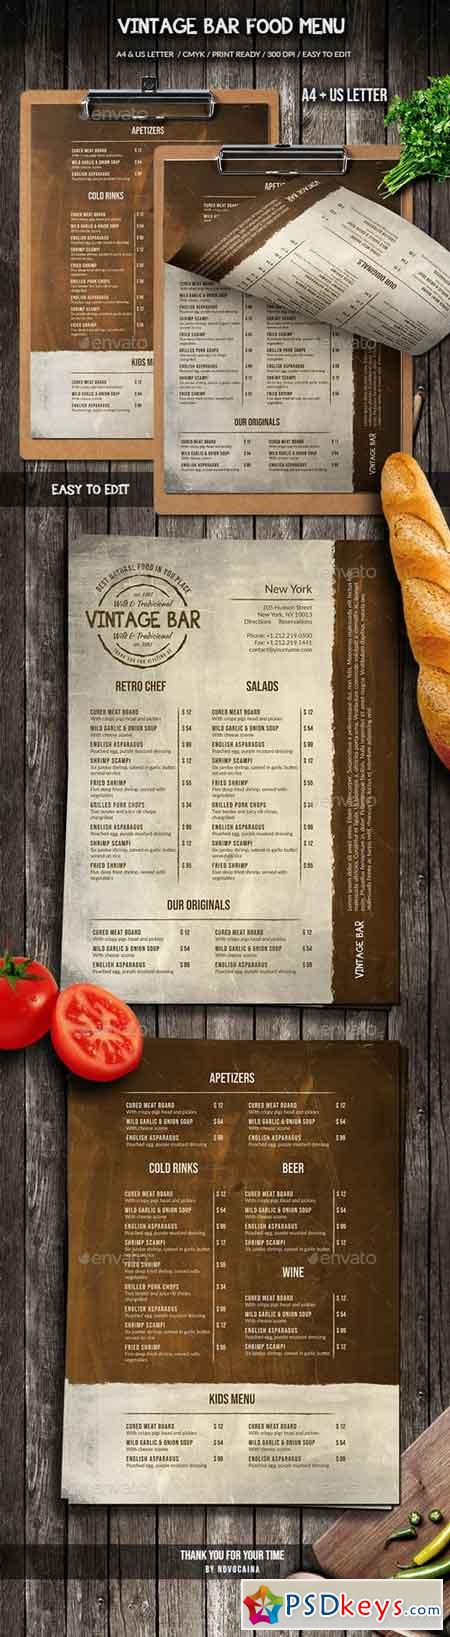 Vintage Bar Food Menu Design A4 & US Letter 21912825